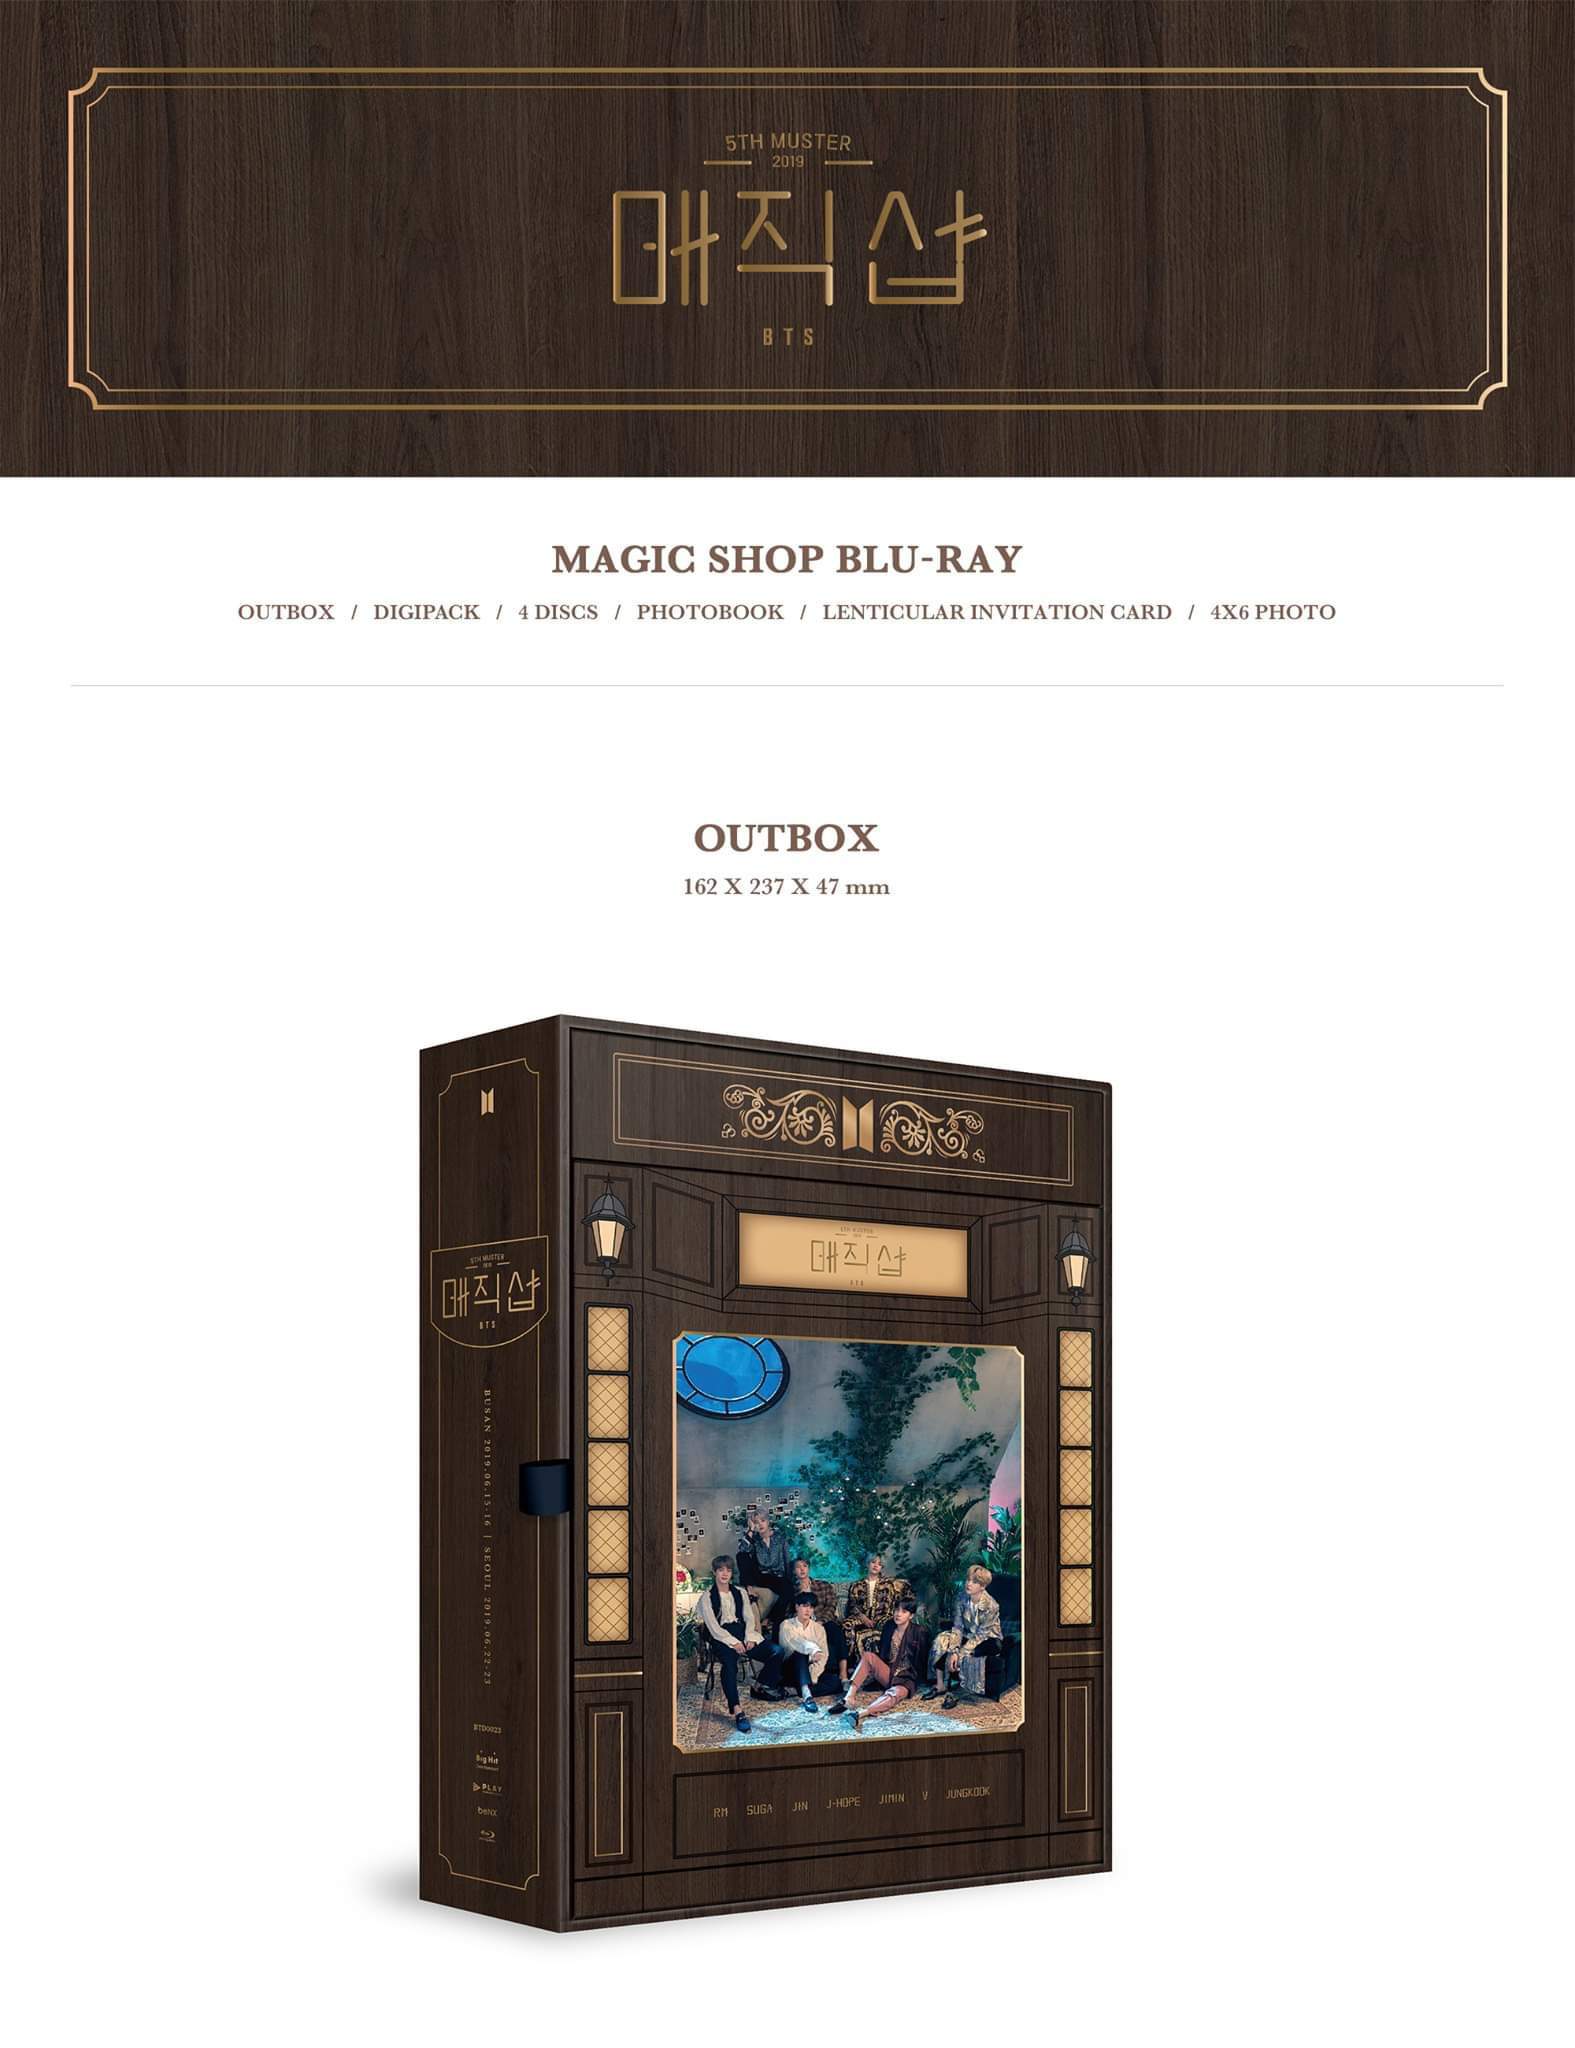 BTS MAGIC SHOP Blu-ray ランダムフォト付き - K-POP/アジア